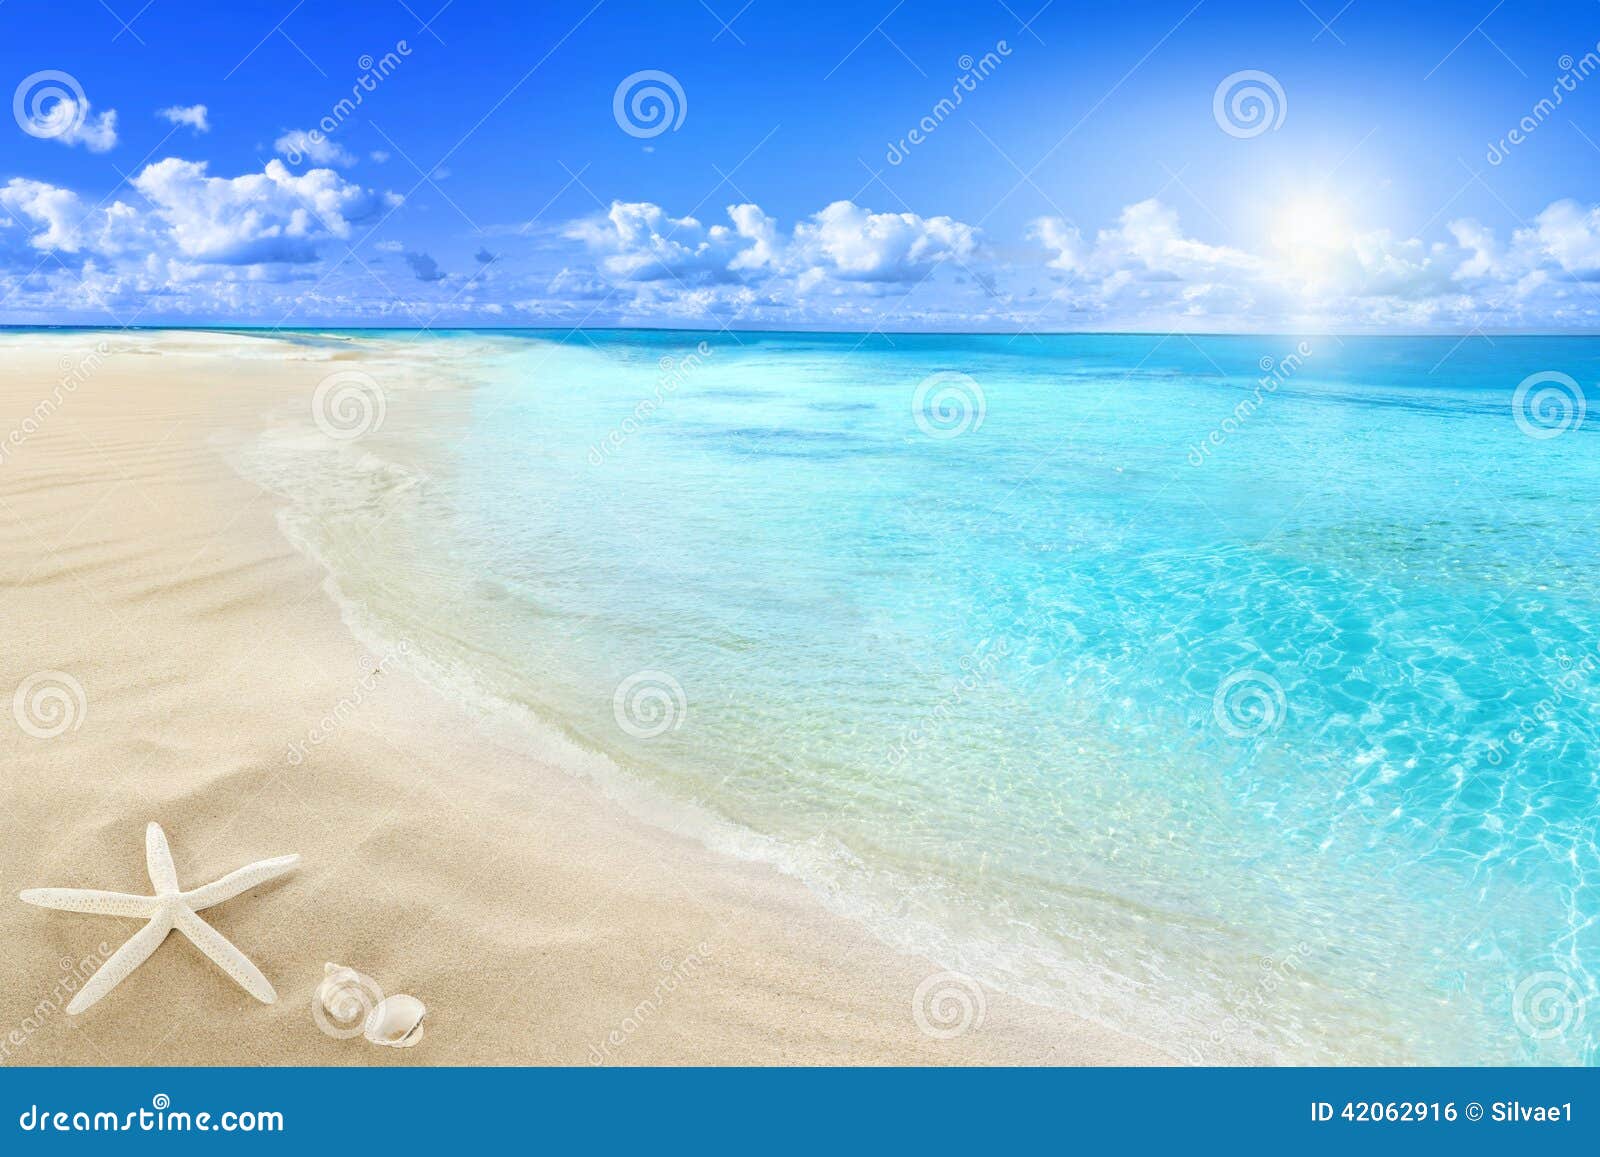 shells on sunny beach